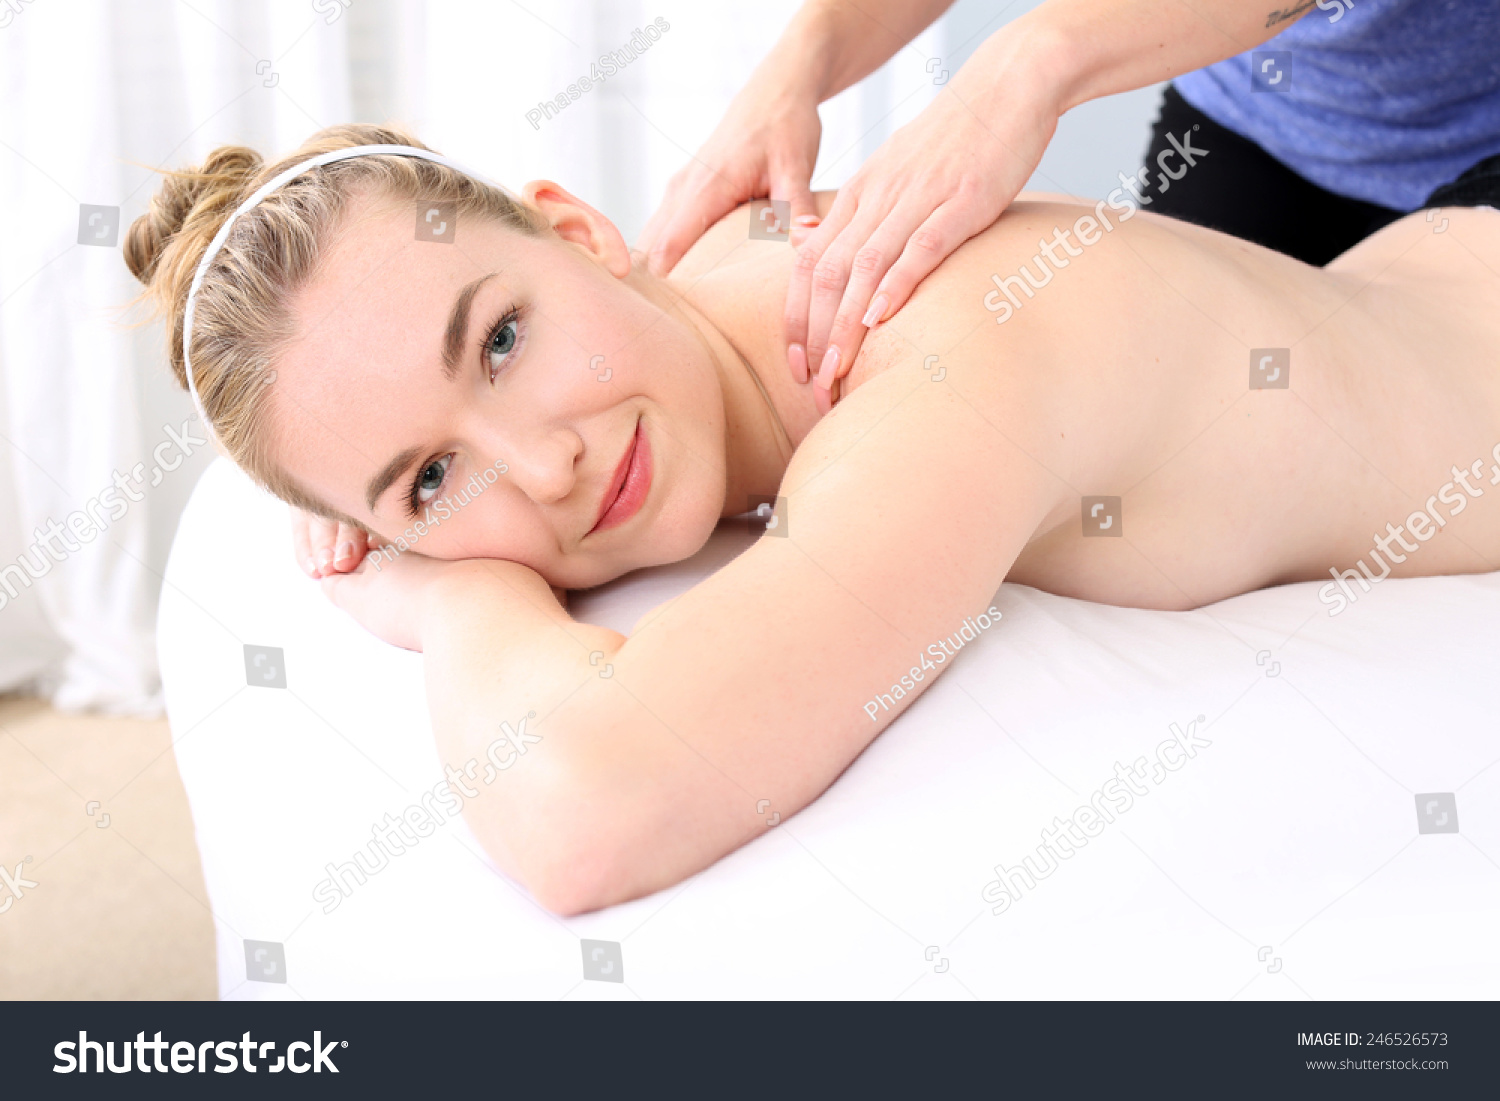 Body Body Girl Girl Massage